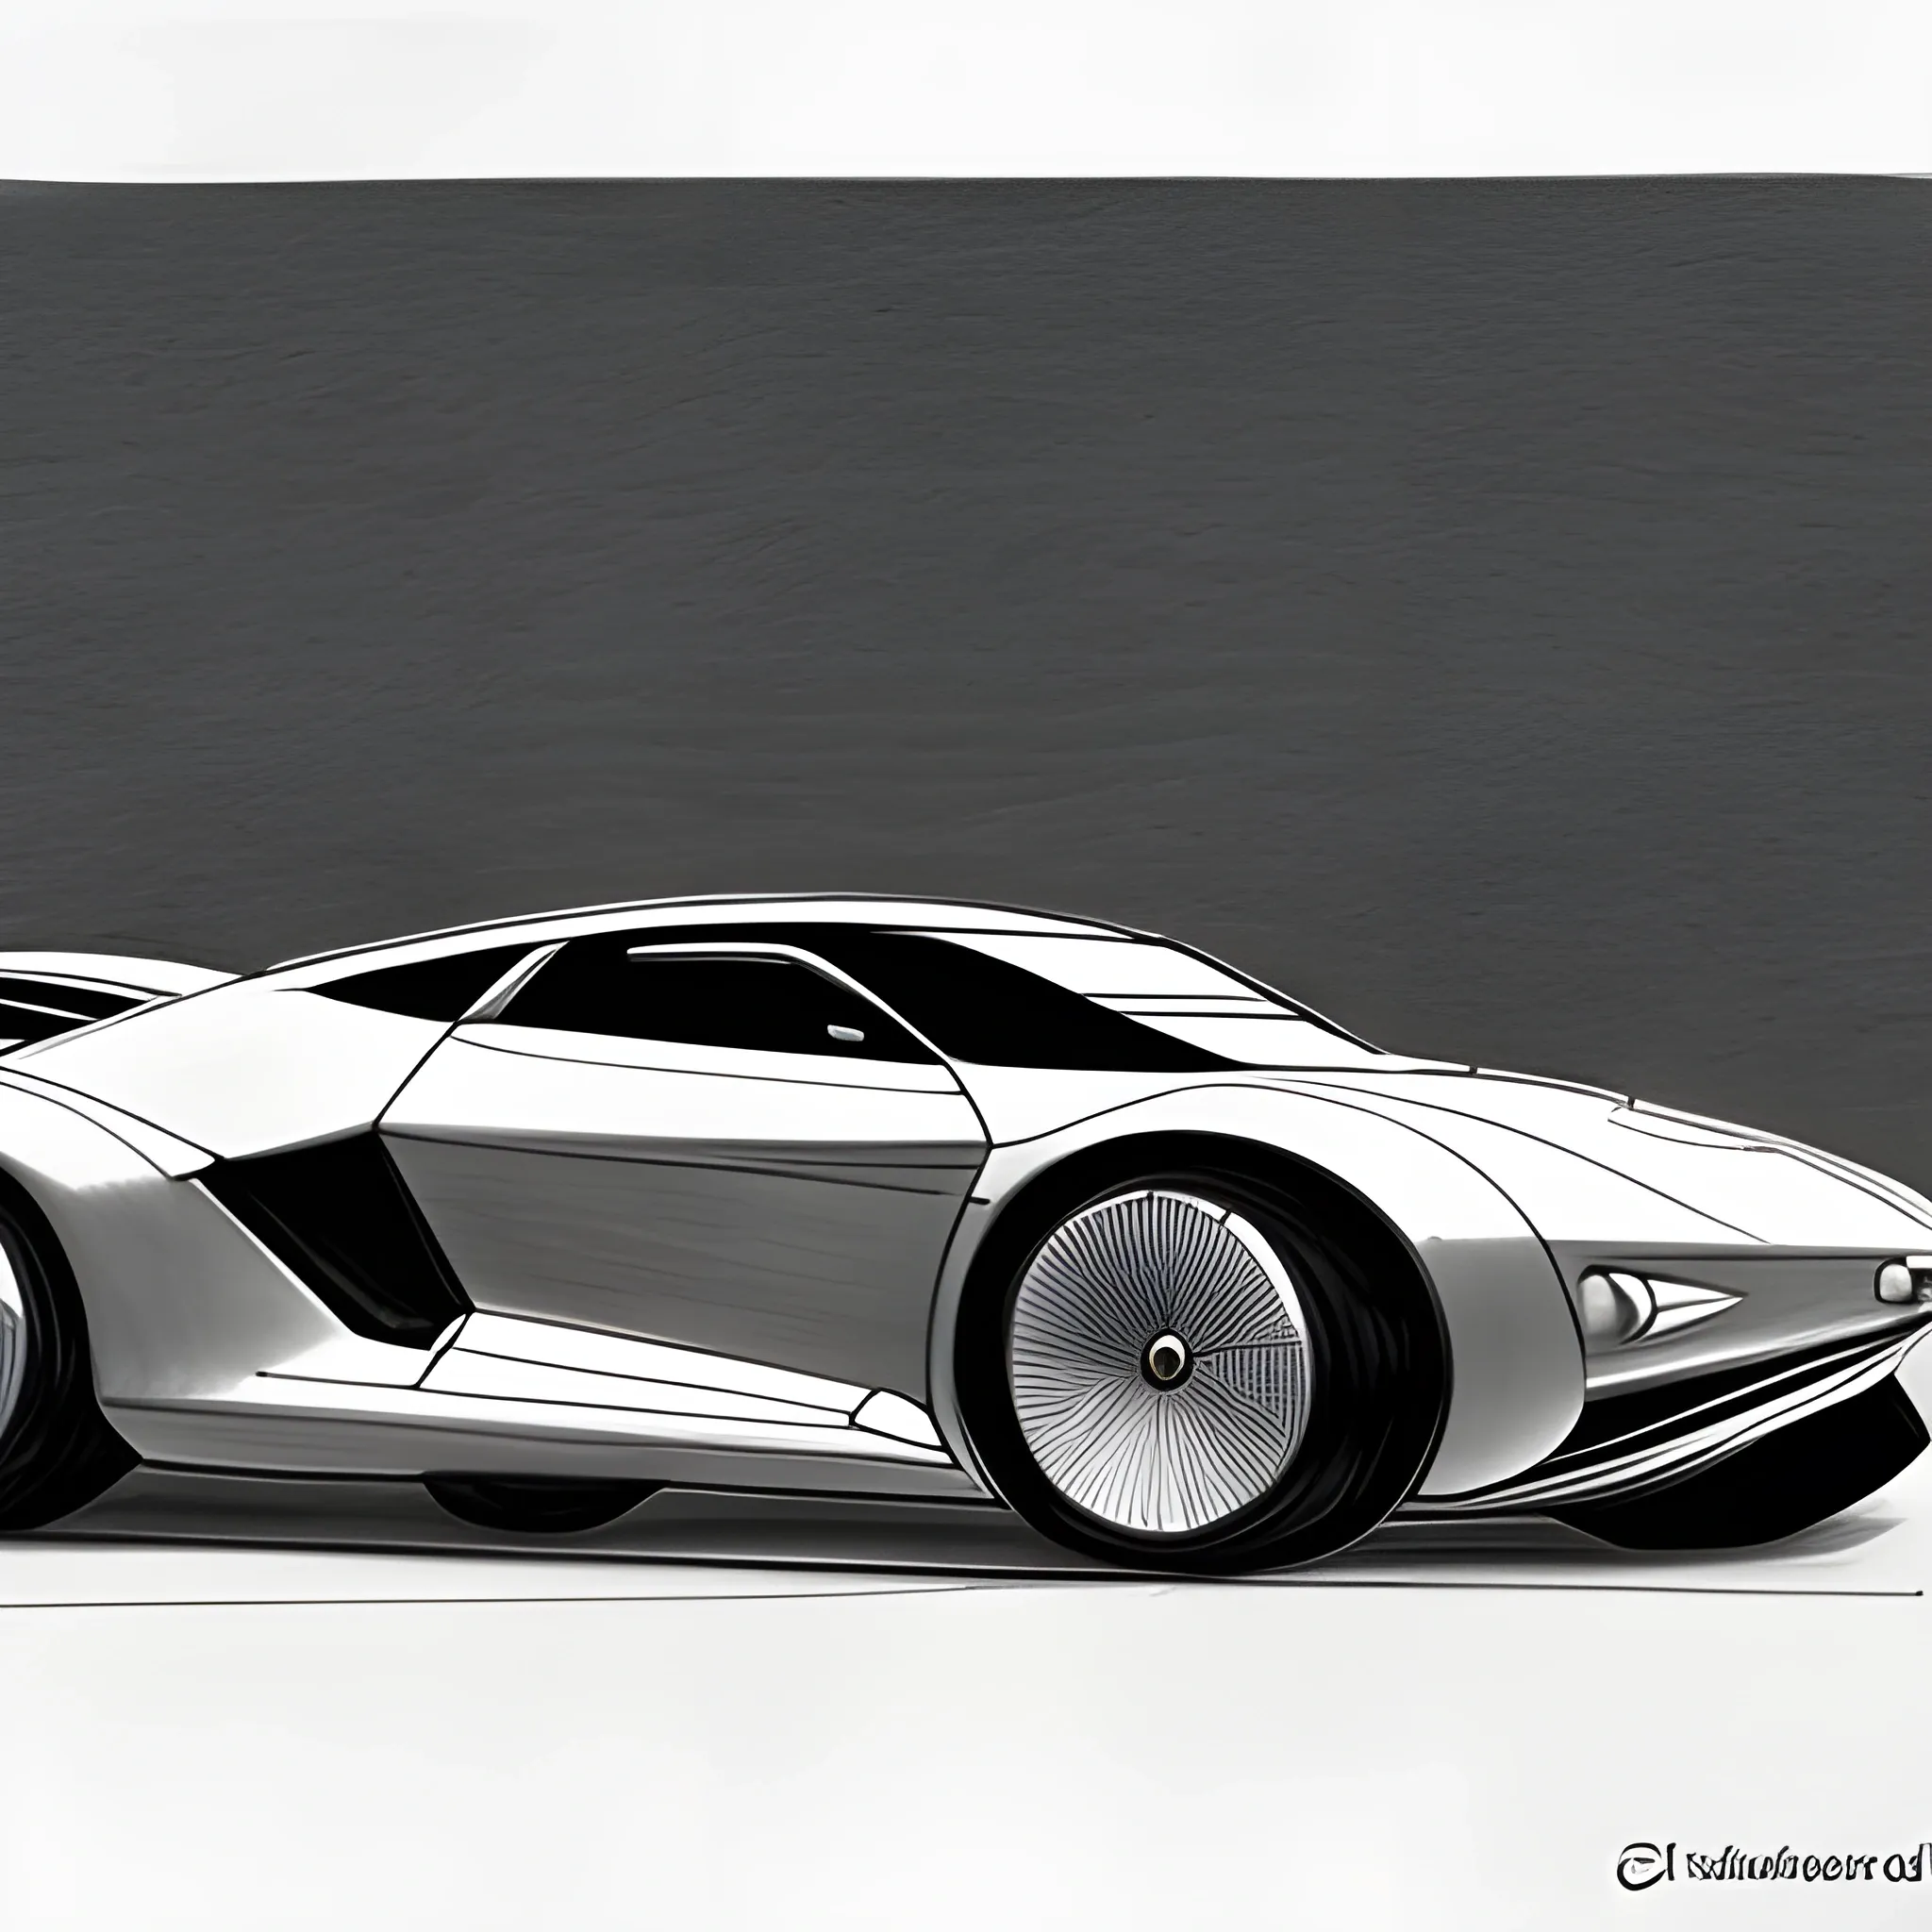 A Futuristic Cars PPT Background, Pencil Sketch